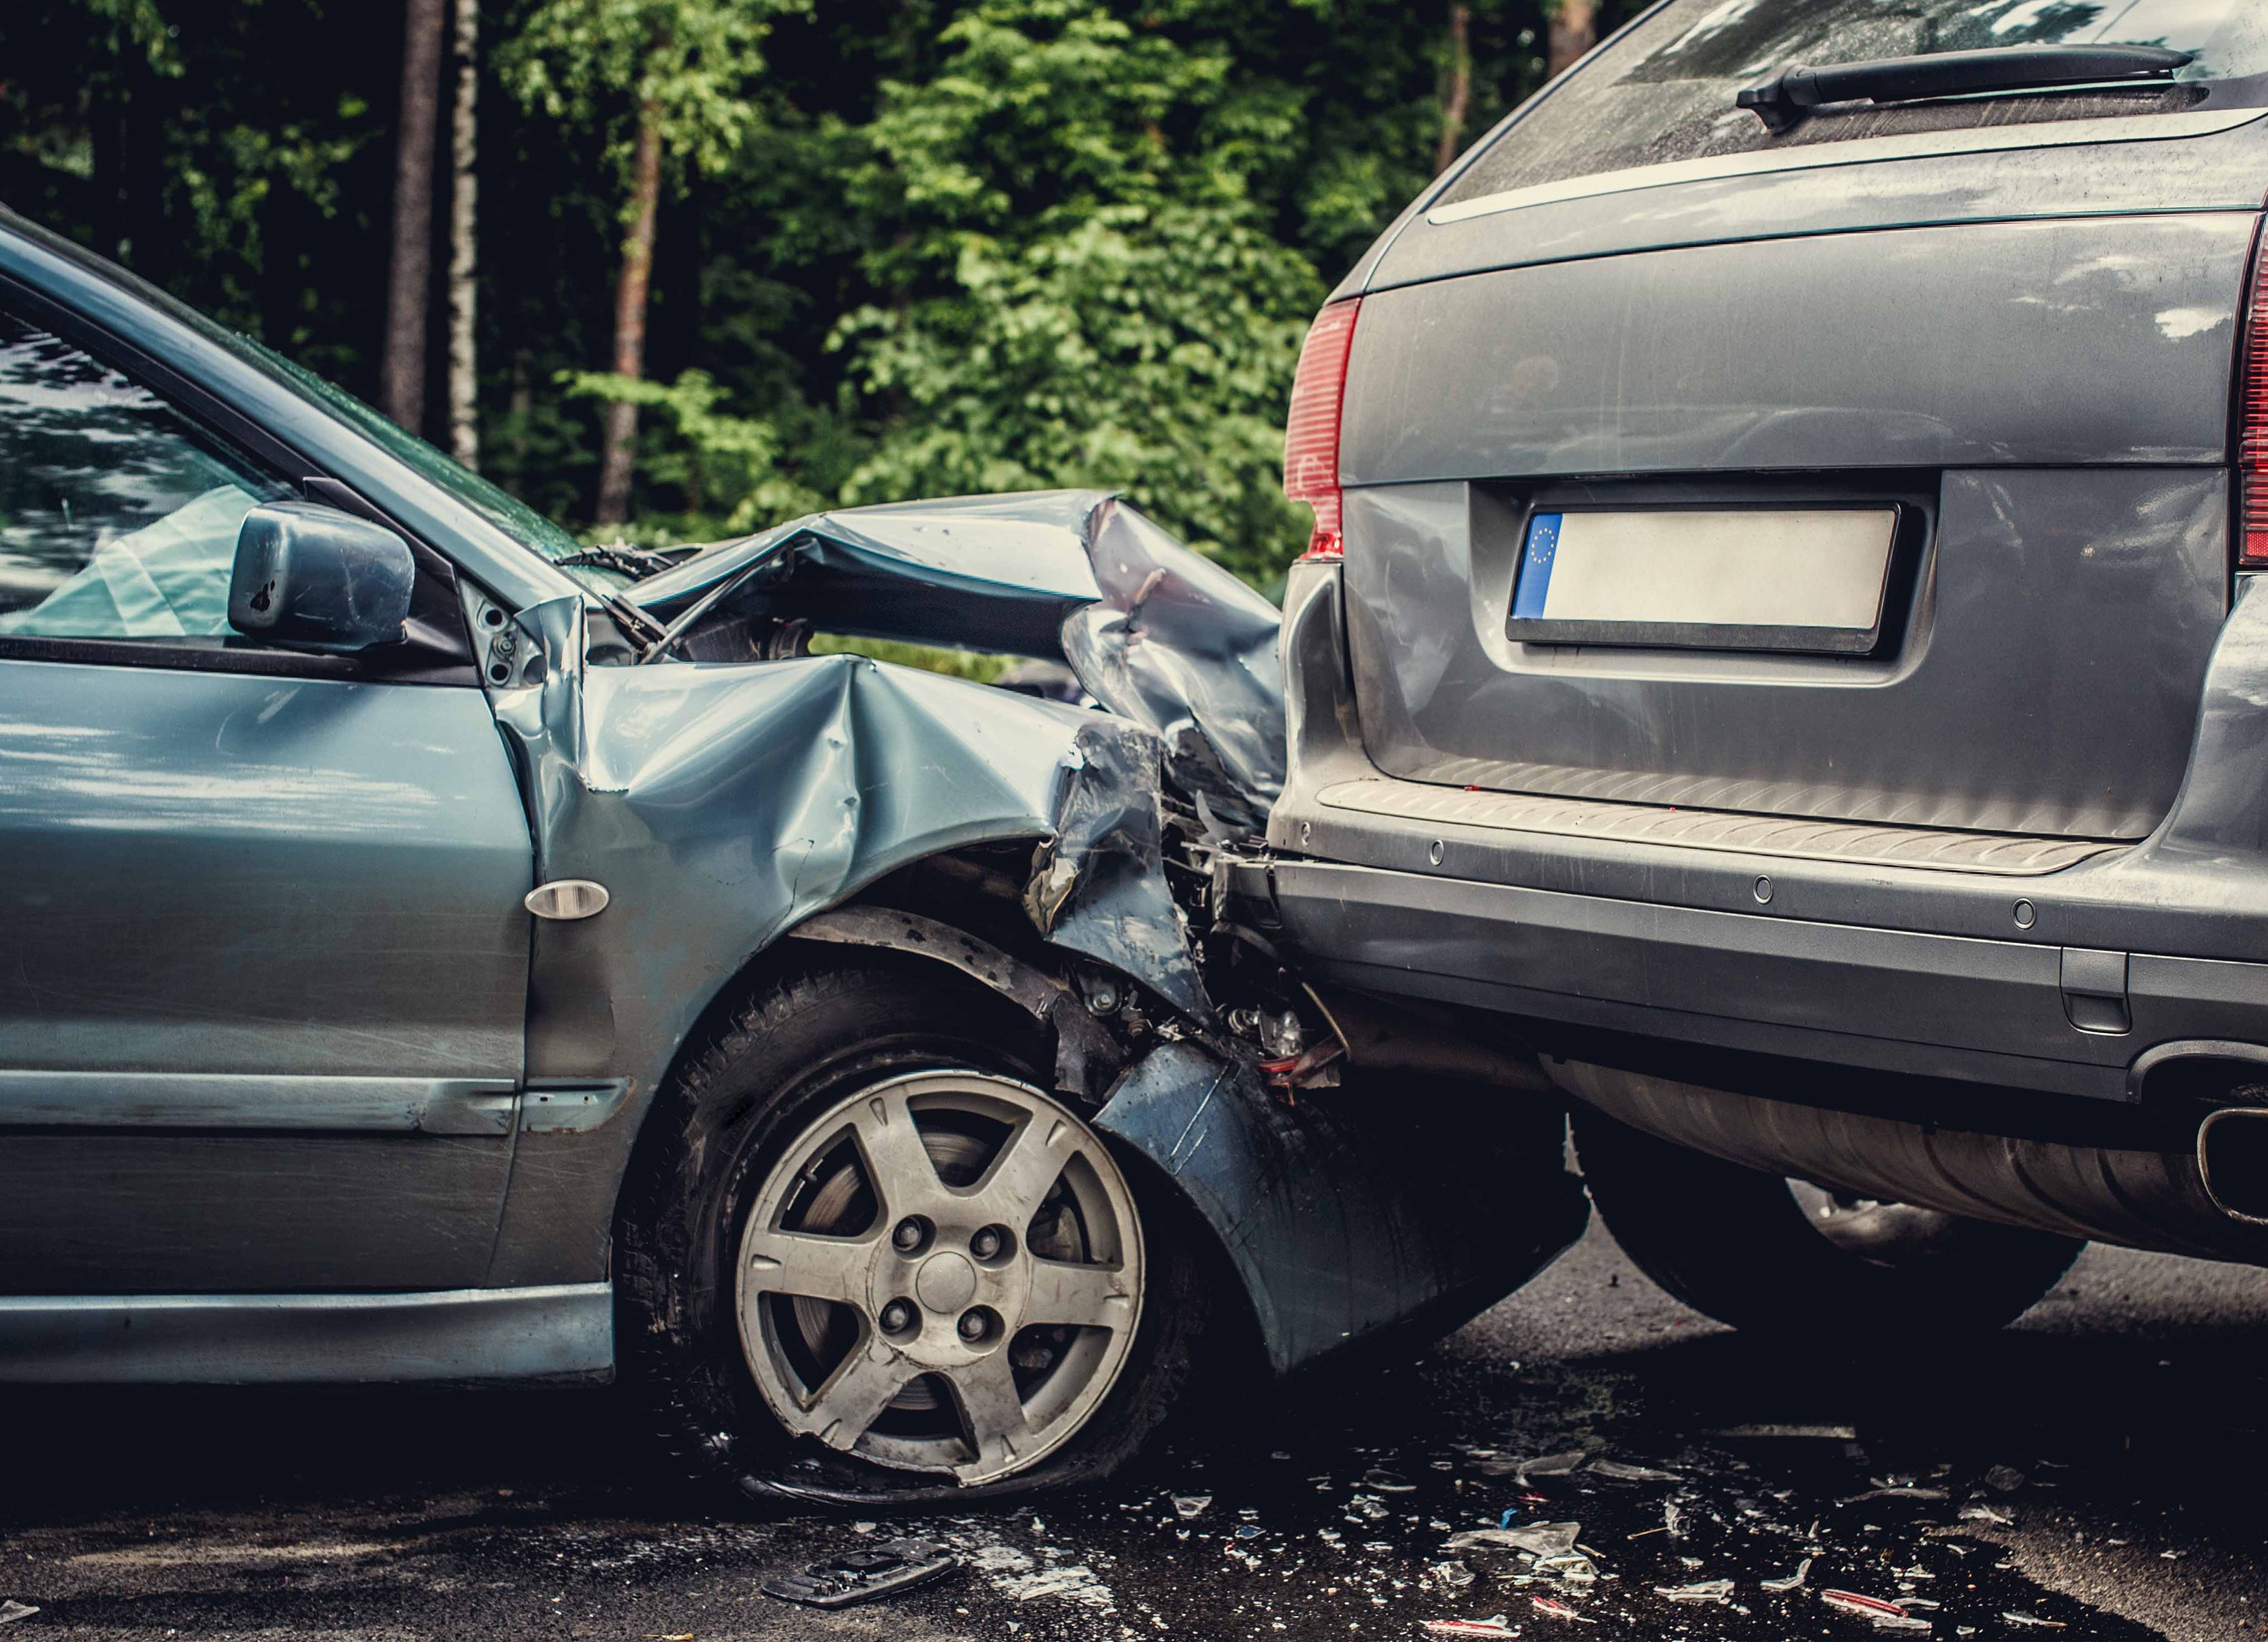 ขับรถชนเค้าต้องรับผิดอย่างไรและชดใช้ค่าเสียหายอะไรและเพียงใด ?? | Legardy